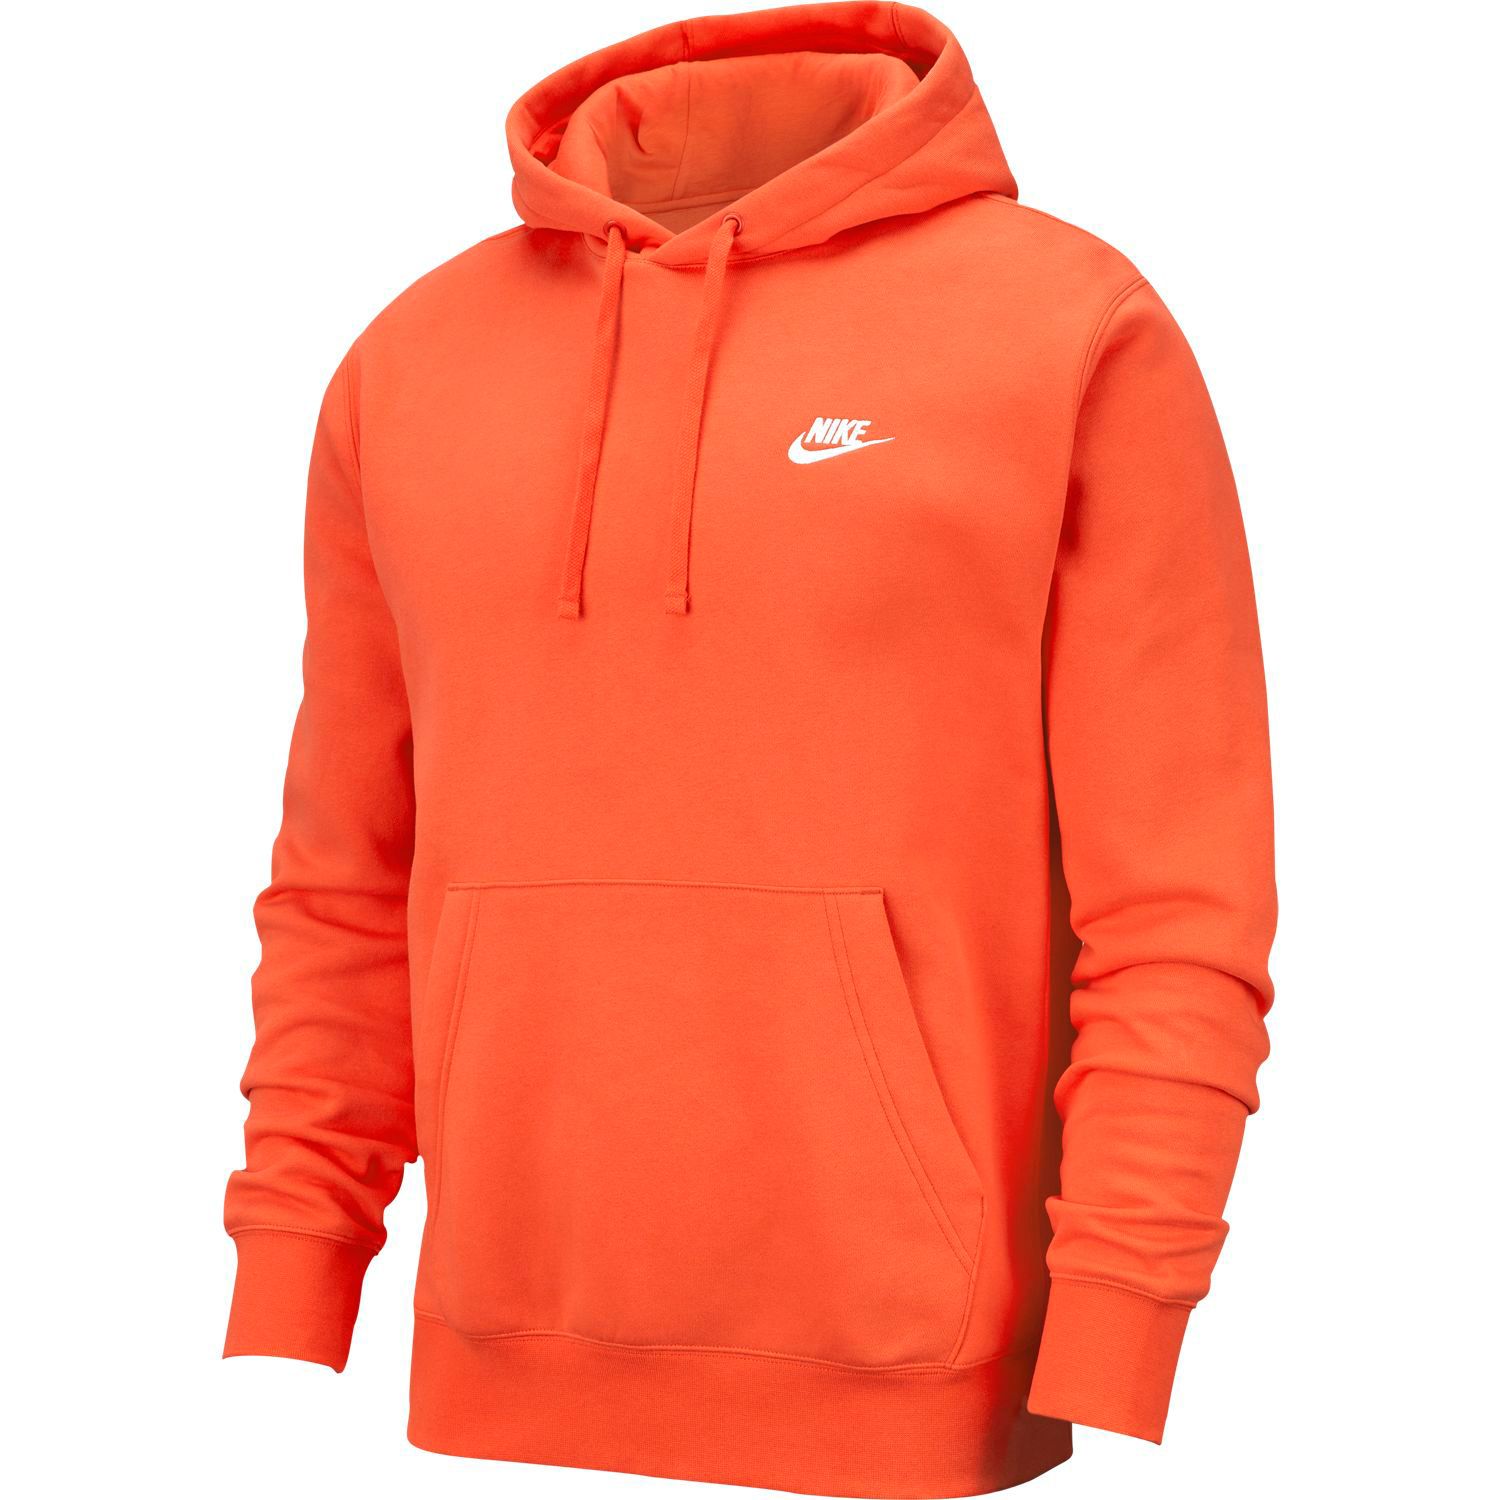 orange nike zip up hoodie 